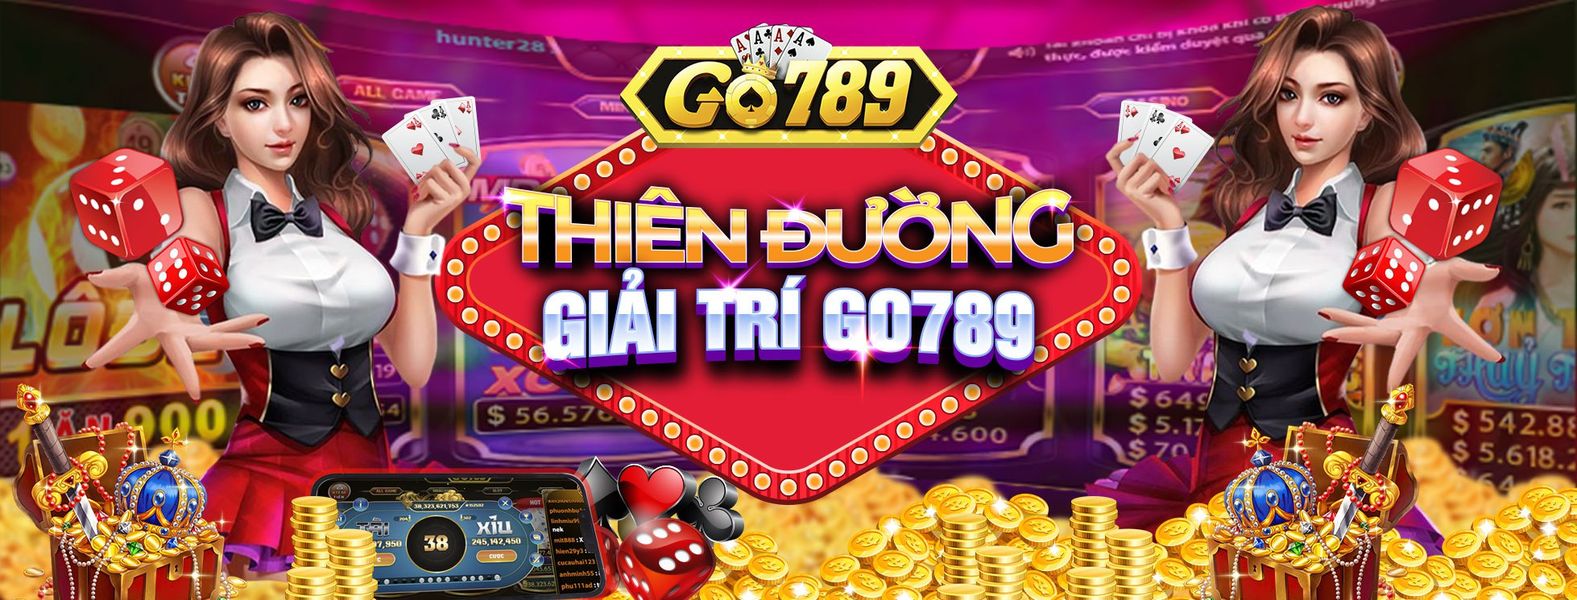 Go789 Tv – Game Bài Xanh Chín Số 1